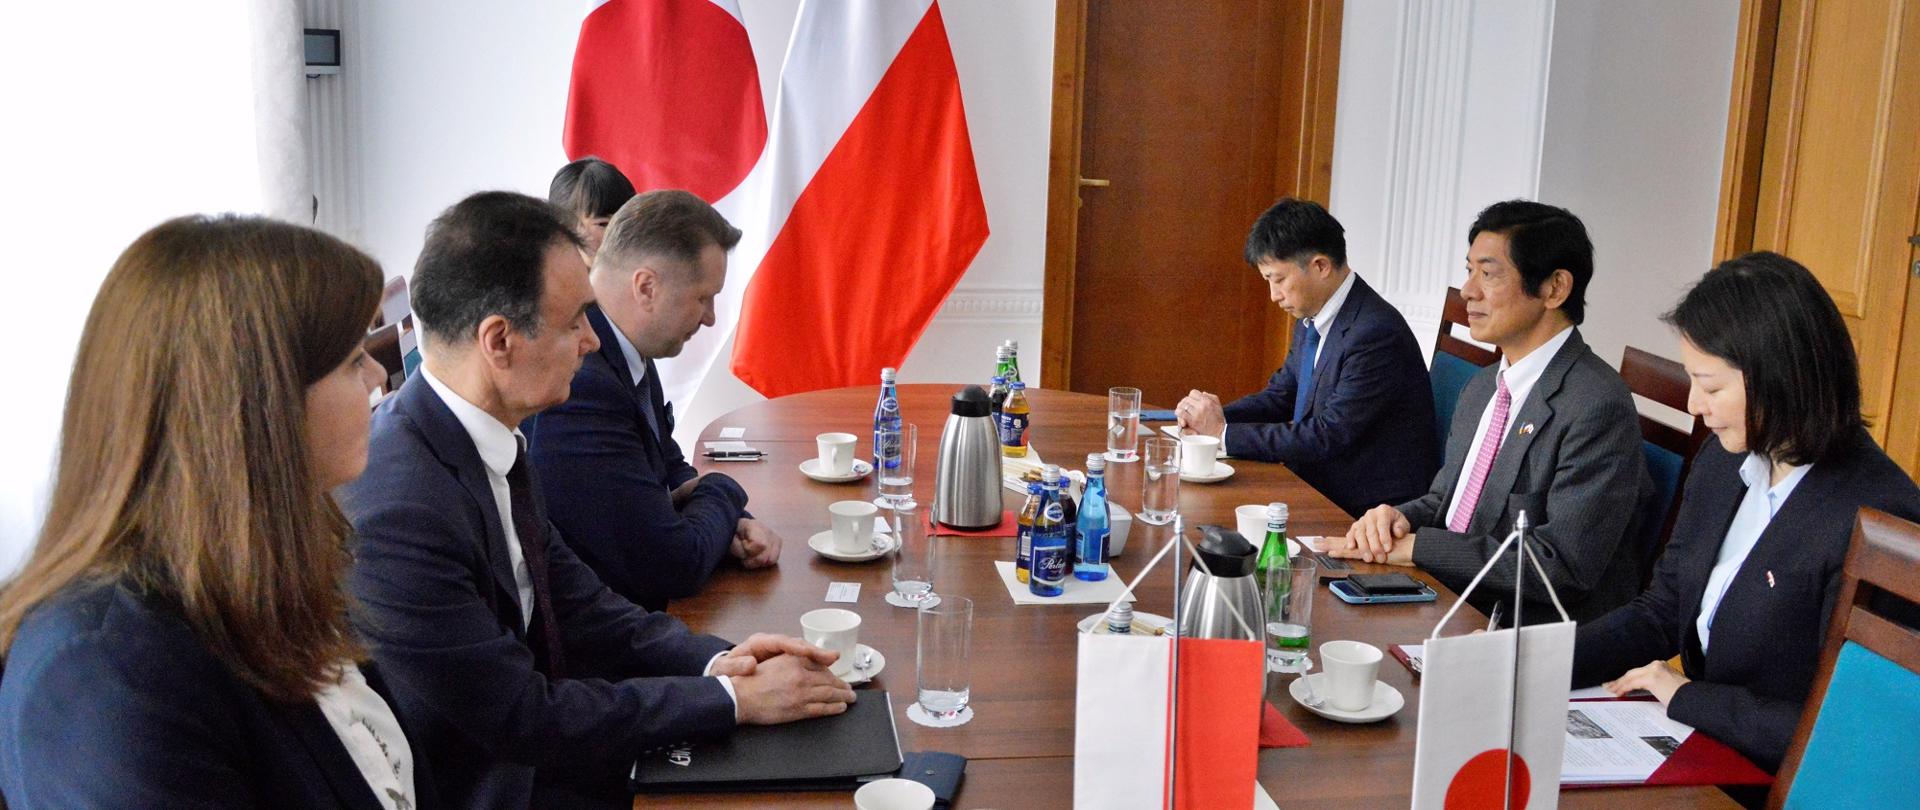 Zdjęcie z boku, przy drewnianym stole siedzi grupa elegancko ubranych osób, przed nimi na stole małe flagi Polski i Japonii, za nimi białe ściany, w nich drewniane drzwi, pod ścianą duże flagi, z lewej zasłonięte białą firanką okno.